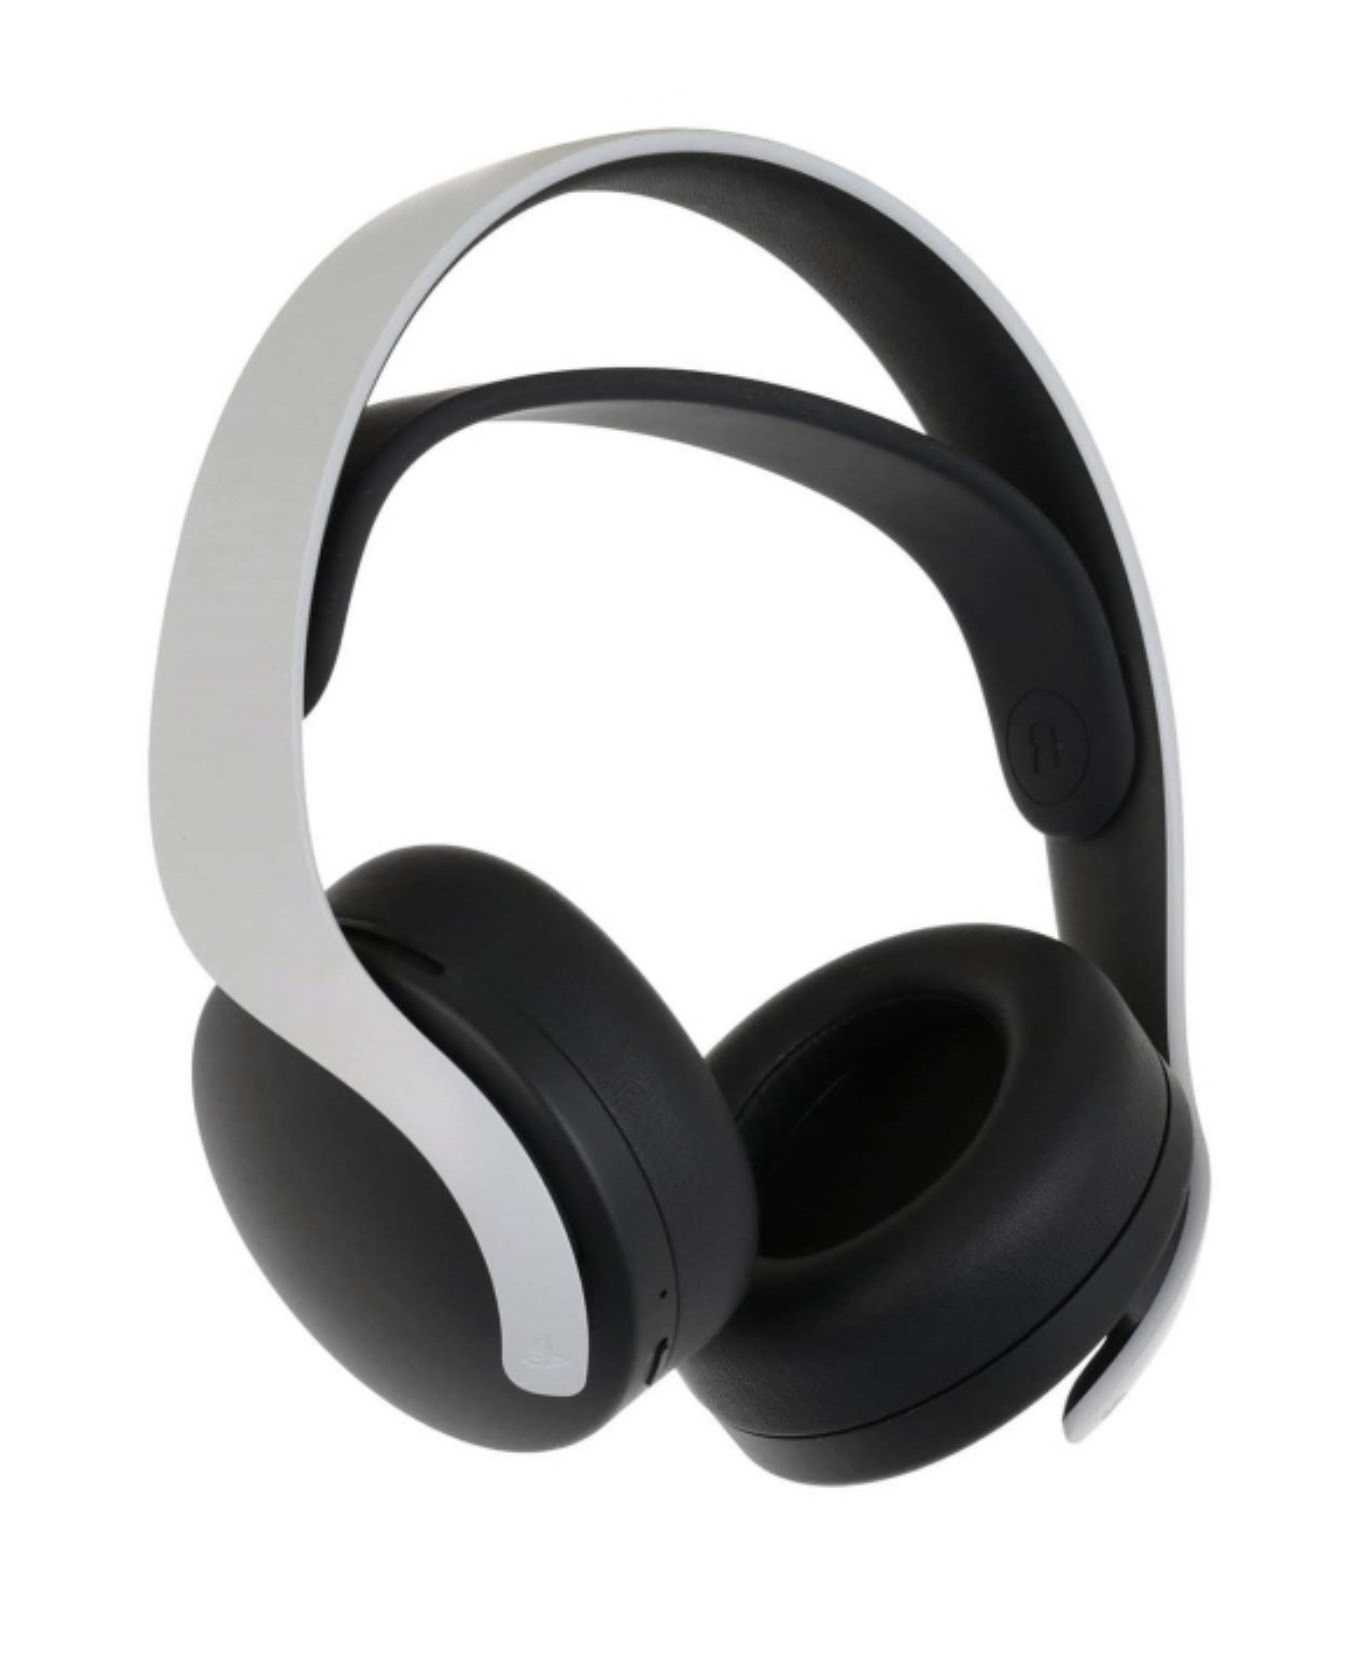 【就是要玩】PS5 原廠 PULSE 3D 無線耳機組 台灣公司貨 耳麥  PS5 PULSE 3D 無線耳機組